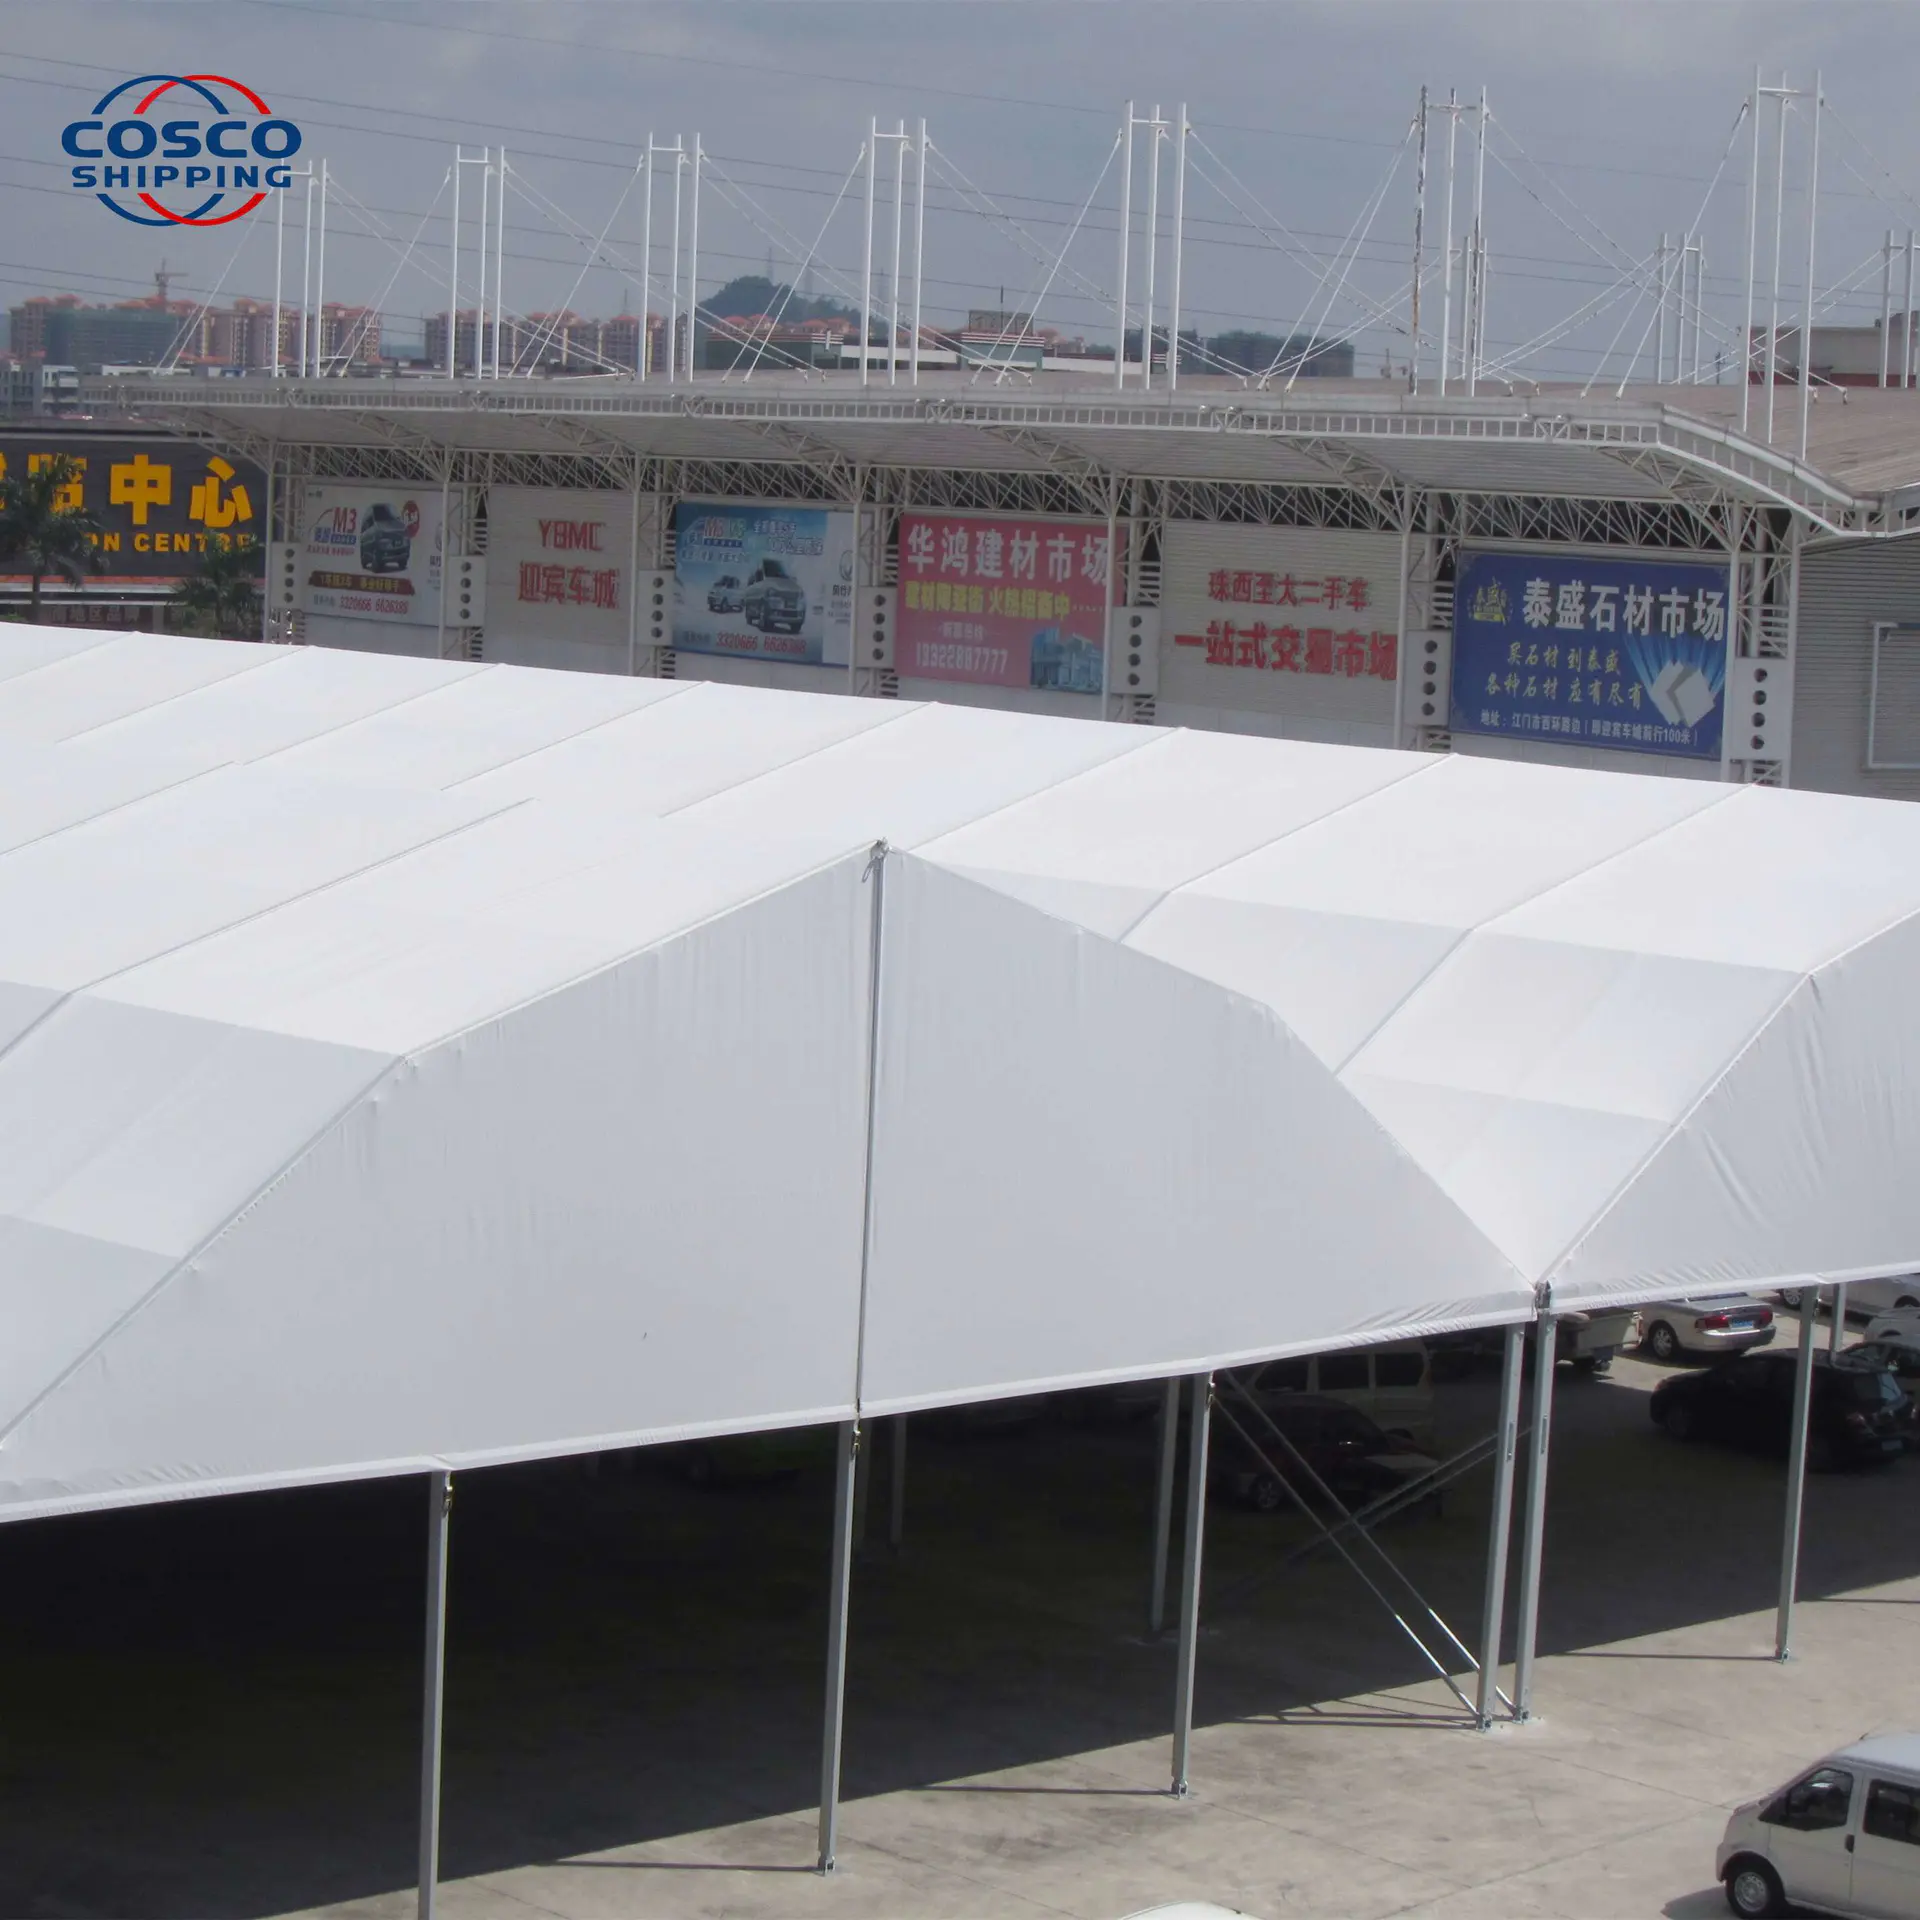 COSCO High Quality Big Polygonal Event Tent for Trade Show Sport